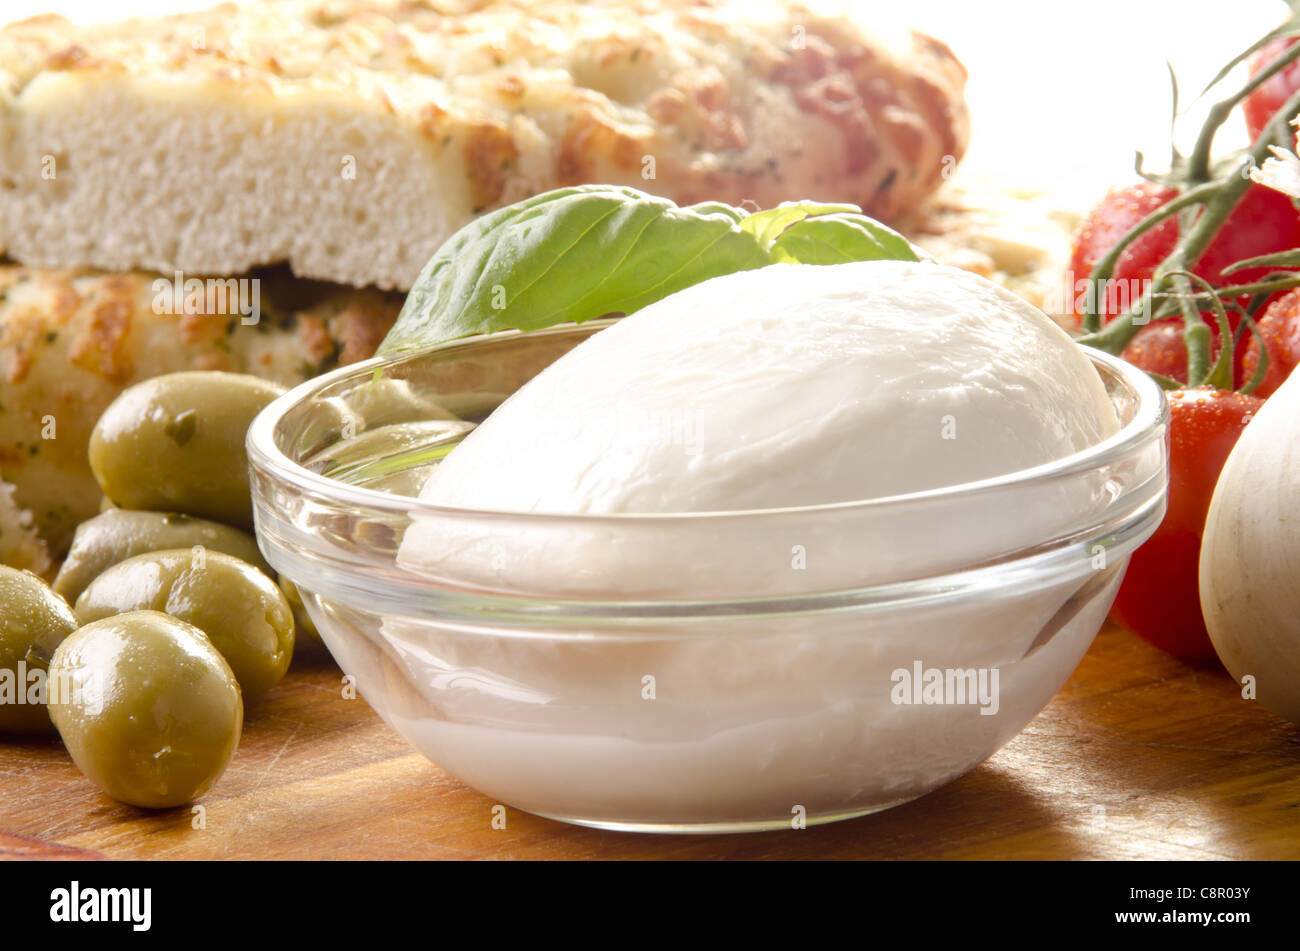 Colazione mediterranea con mozzarella di bufala, olive e pane speziato Foto Stock